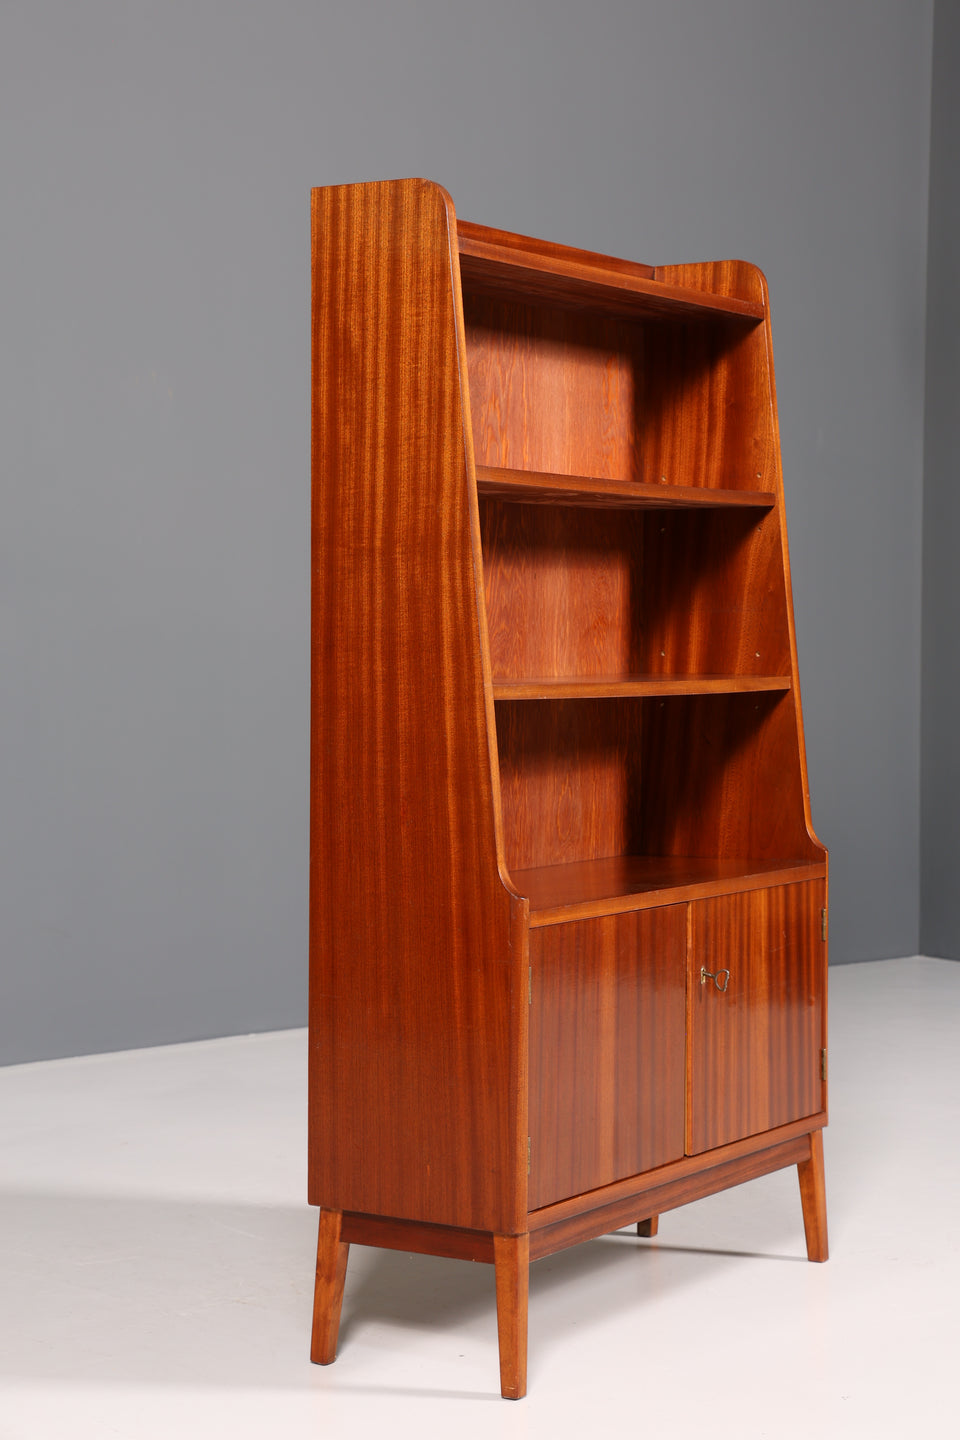 Wunderschöner Mid Century Schrank Bücherregal Vintage Highboard Retro Holz Regal 60er Jahre